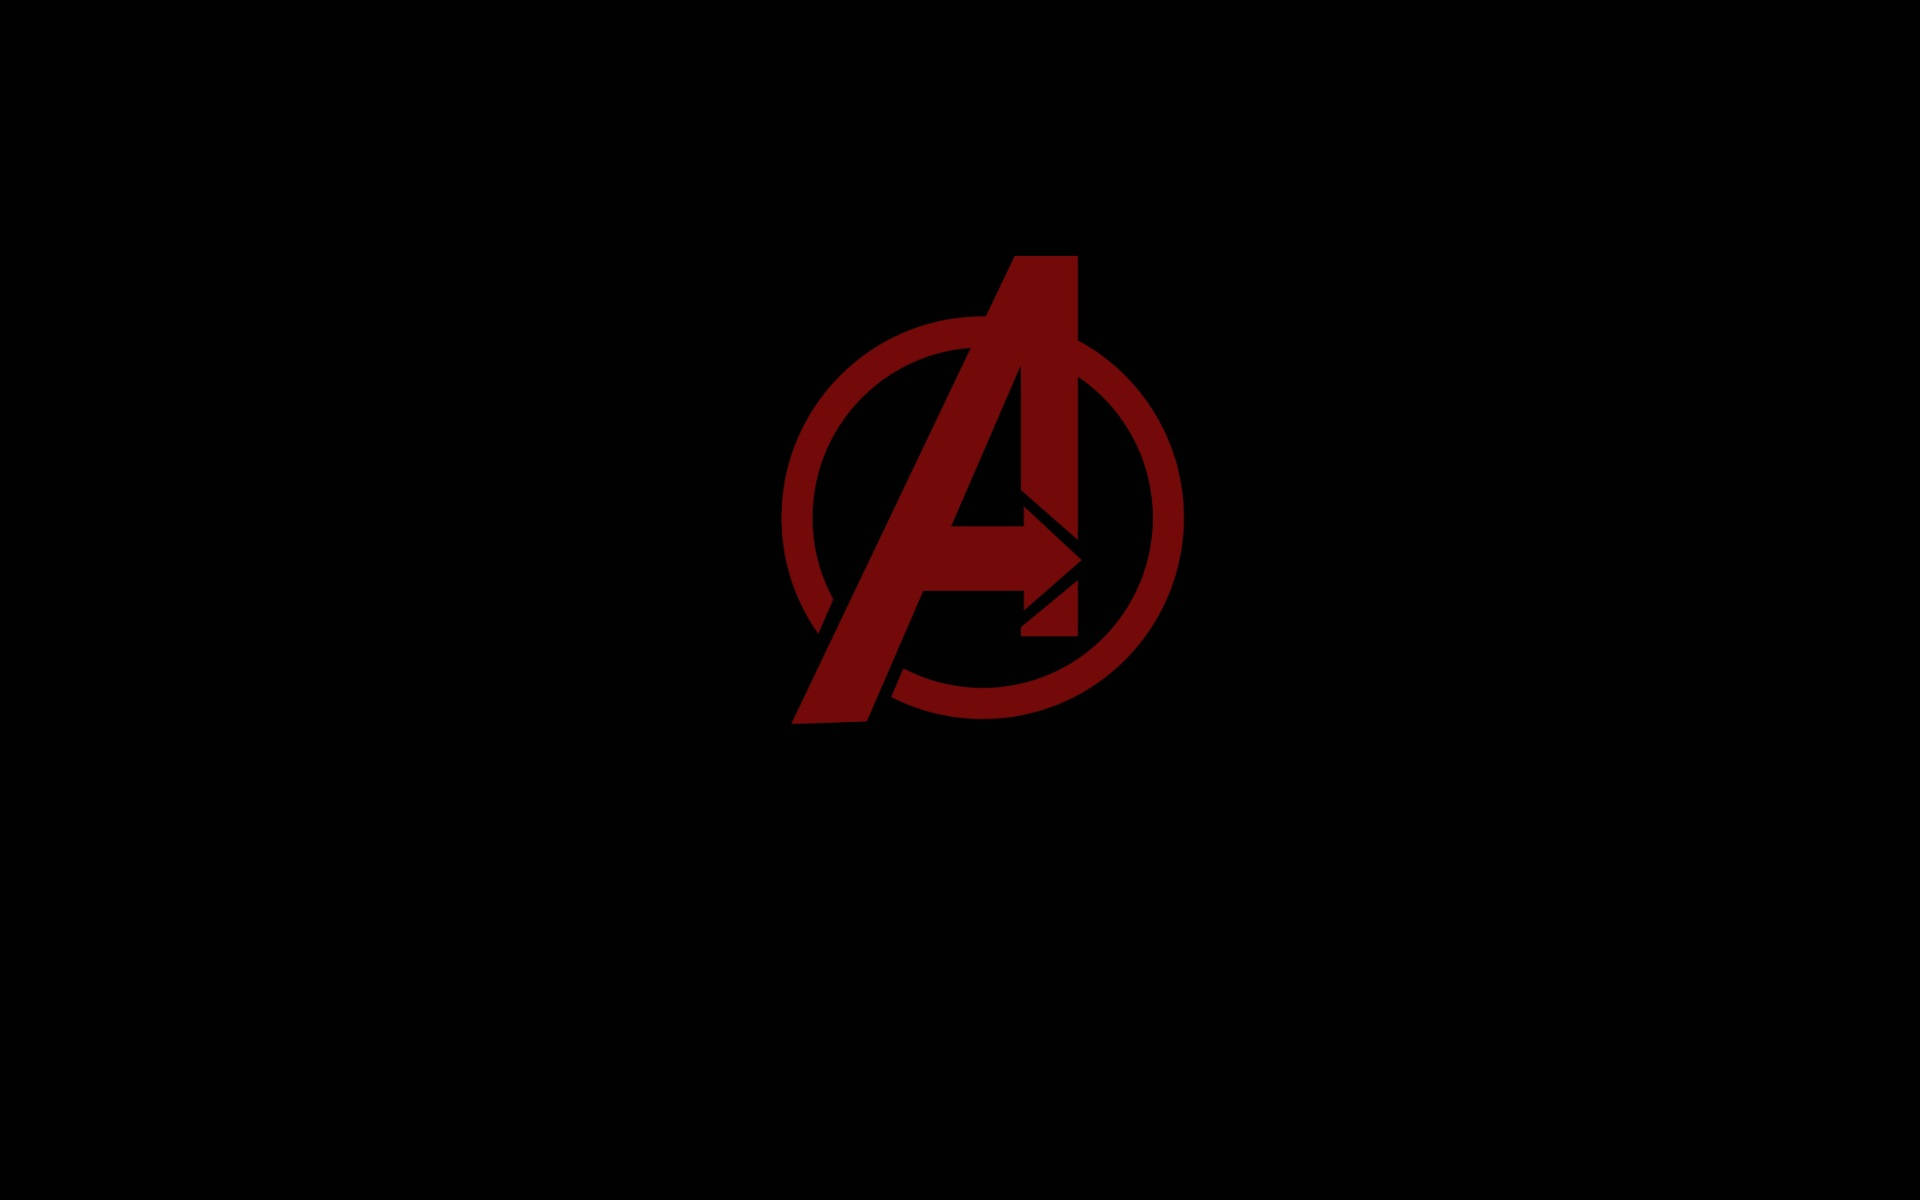 Simple Black Marvel Avengers Logo Red Aesthetic Background